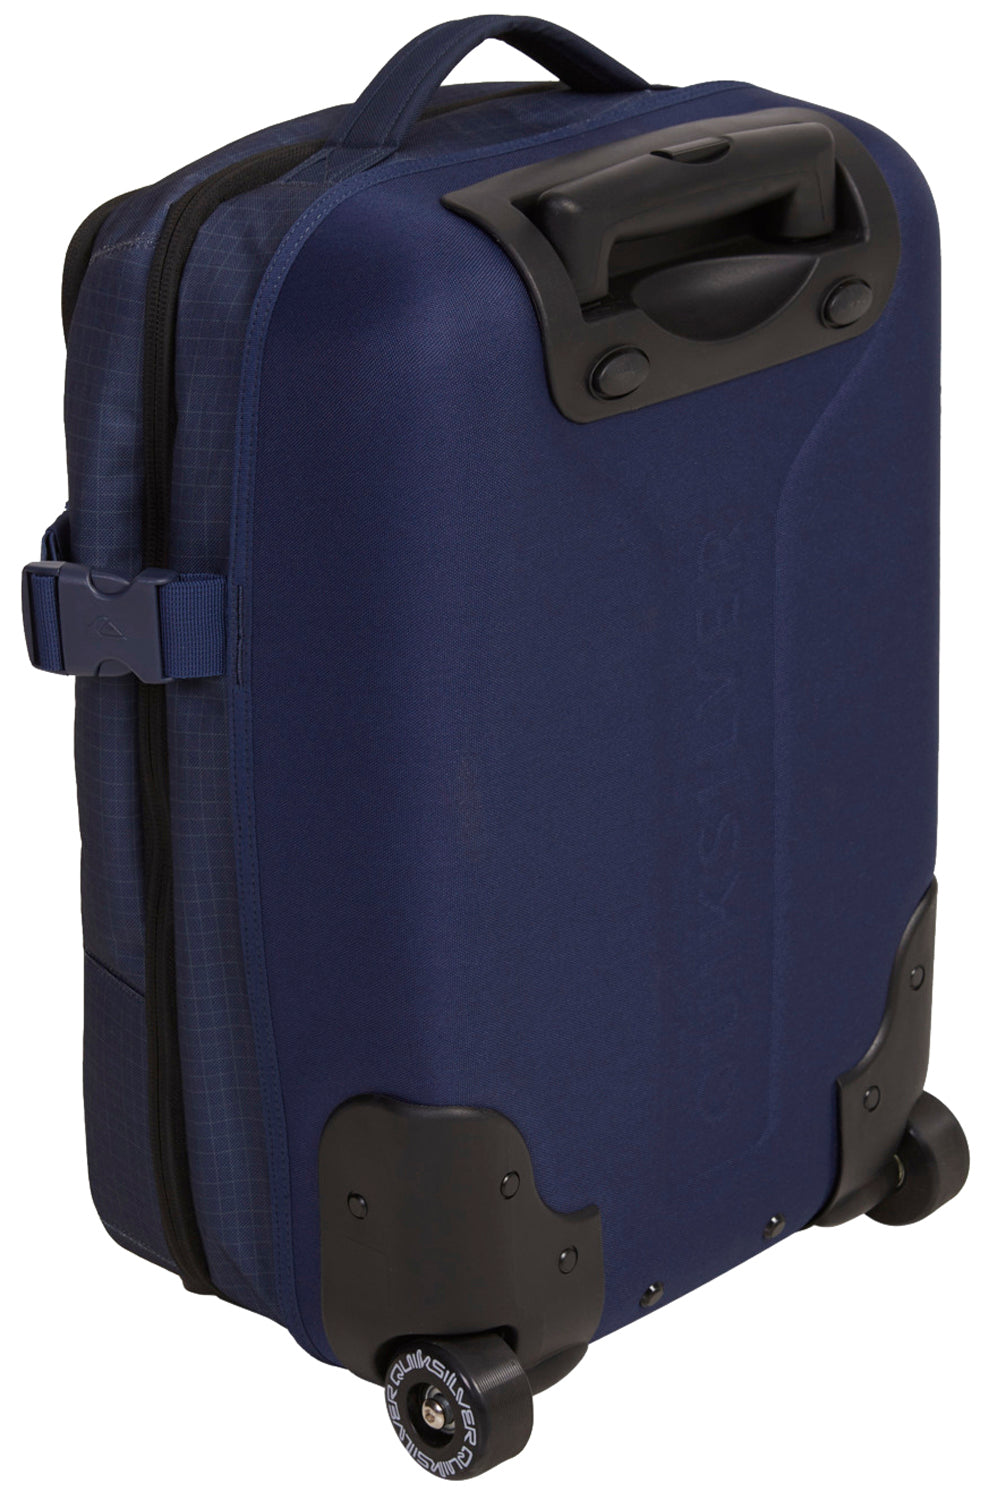 Quiksilver Horizon 41L Suitcase - Naval Academy